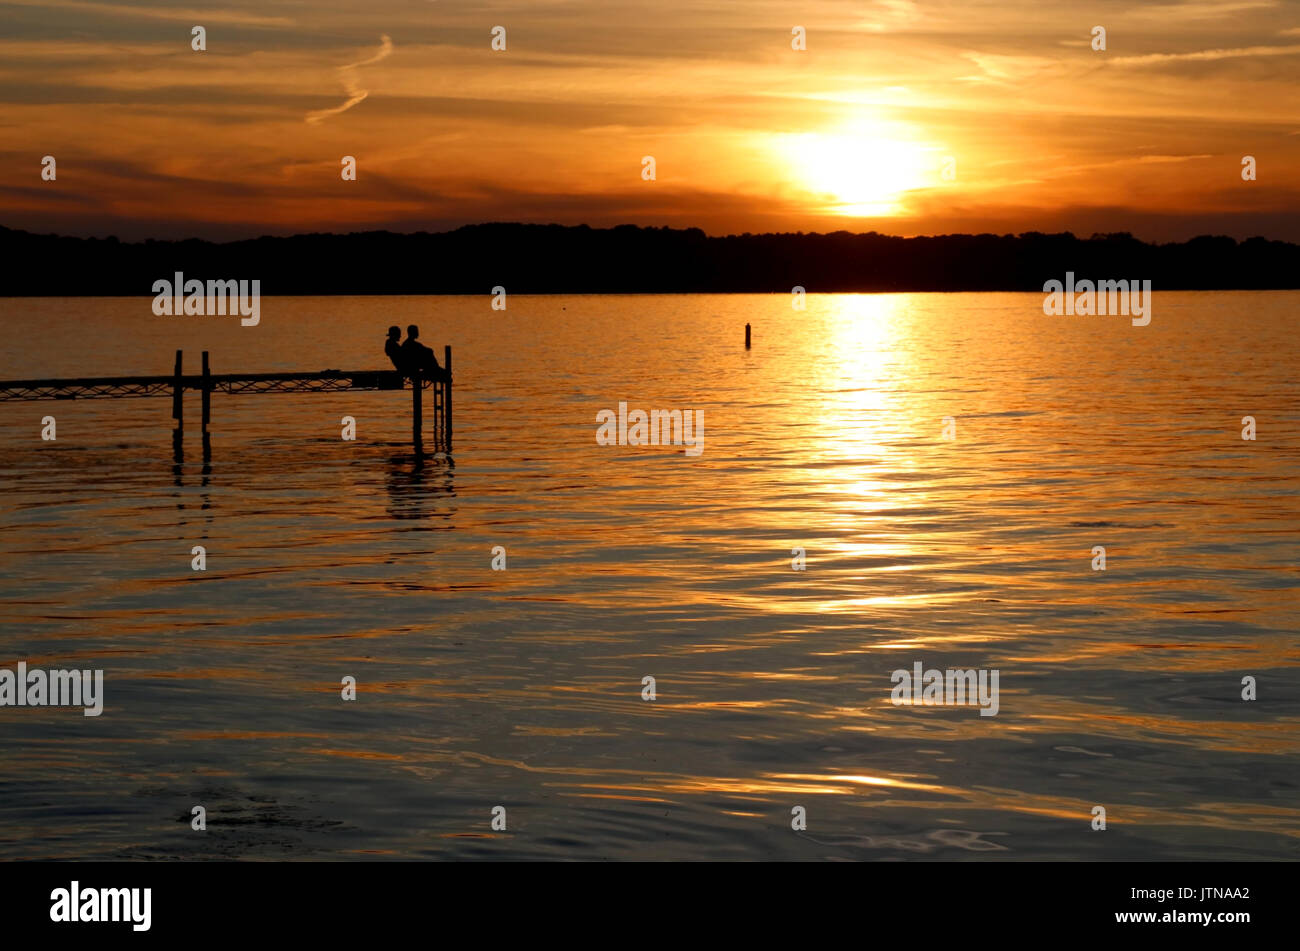 Paysage avec coucher du soleil doré et des silhouettes de personnes profitant de la belle soirée sur un lac Mendota pier dans la ville de Madison, Wisconsin, USA. Banque D'Images